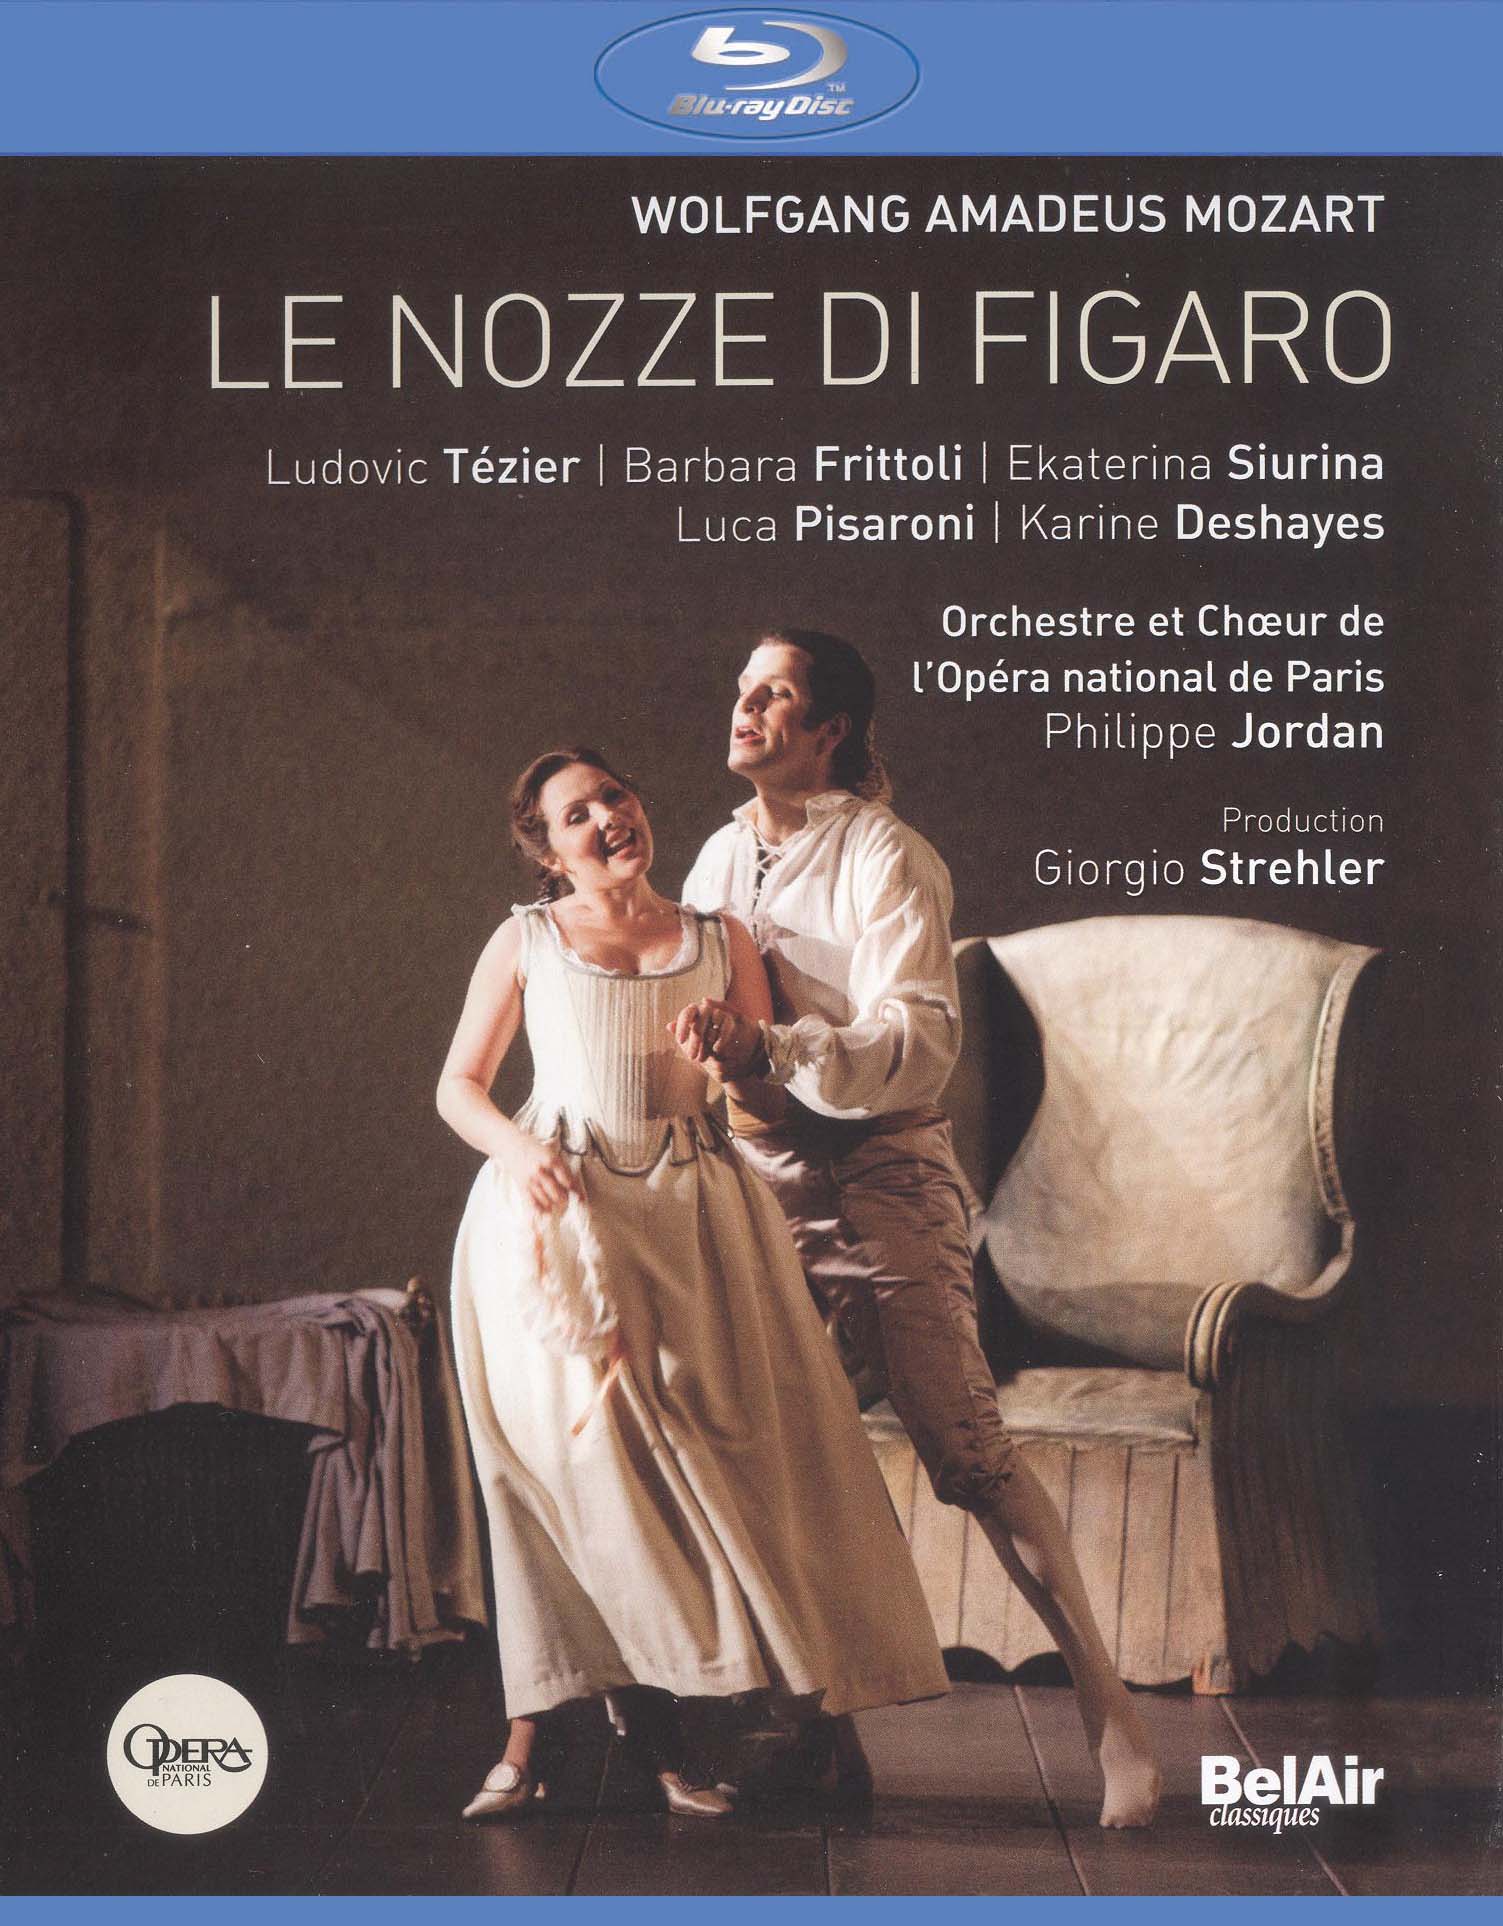 Le Nozze di Figaro (Opera National de Paris) (2010) - Don Kent ...